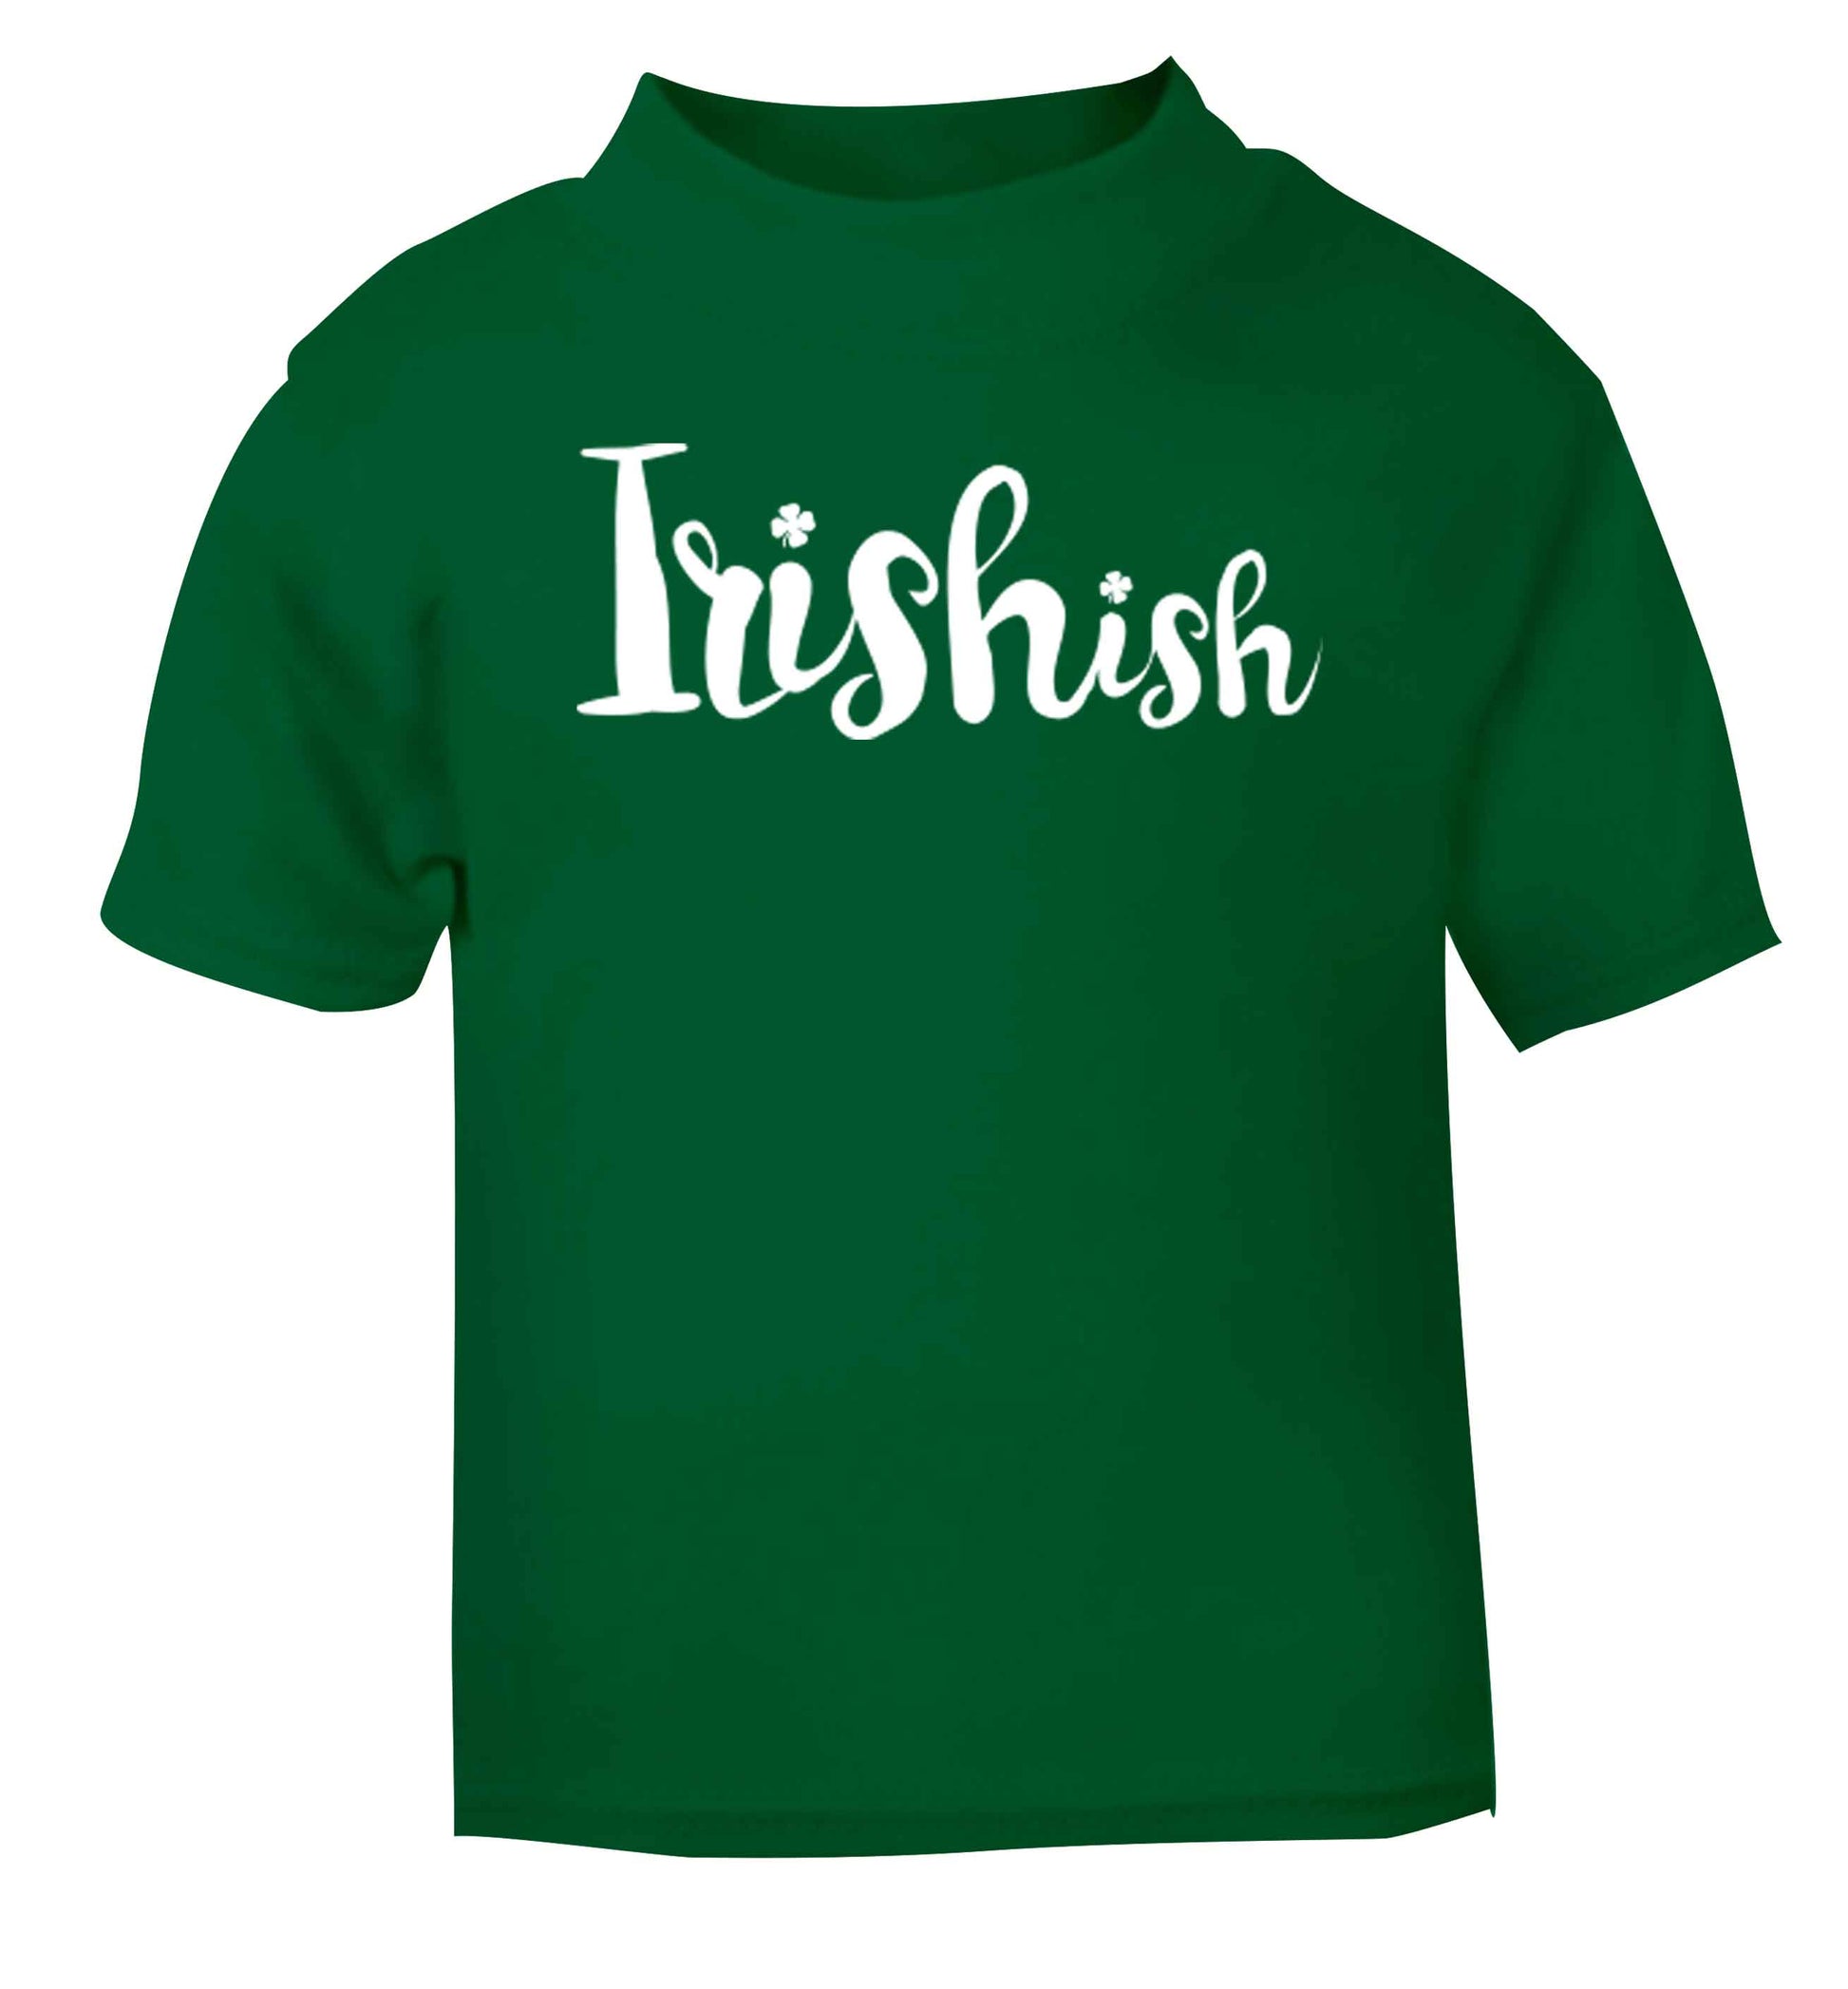 Irishish green baby toddler Tshirt 2 Years